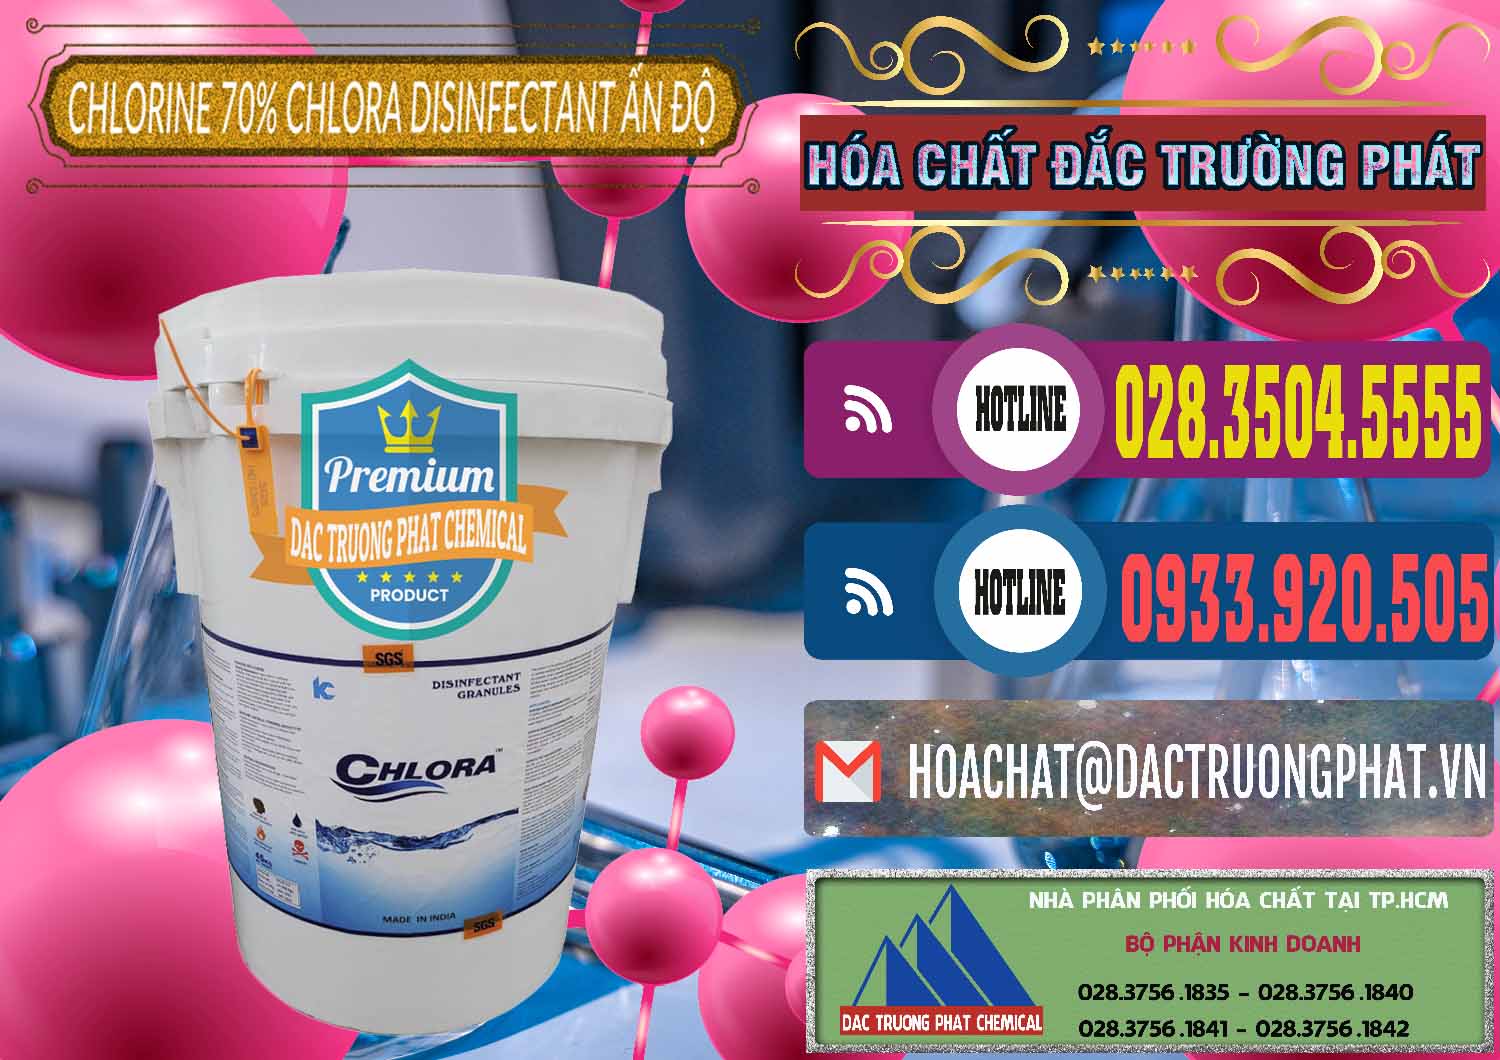 Cty bán và cung cấp Chlorine – Clorin 70% Chlora Disinfectant Ấn Độ India - 0213 - Công ty cung ứng và phân phối hóa chất tại TP.HCM - muabanhoachat.com.vn